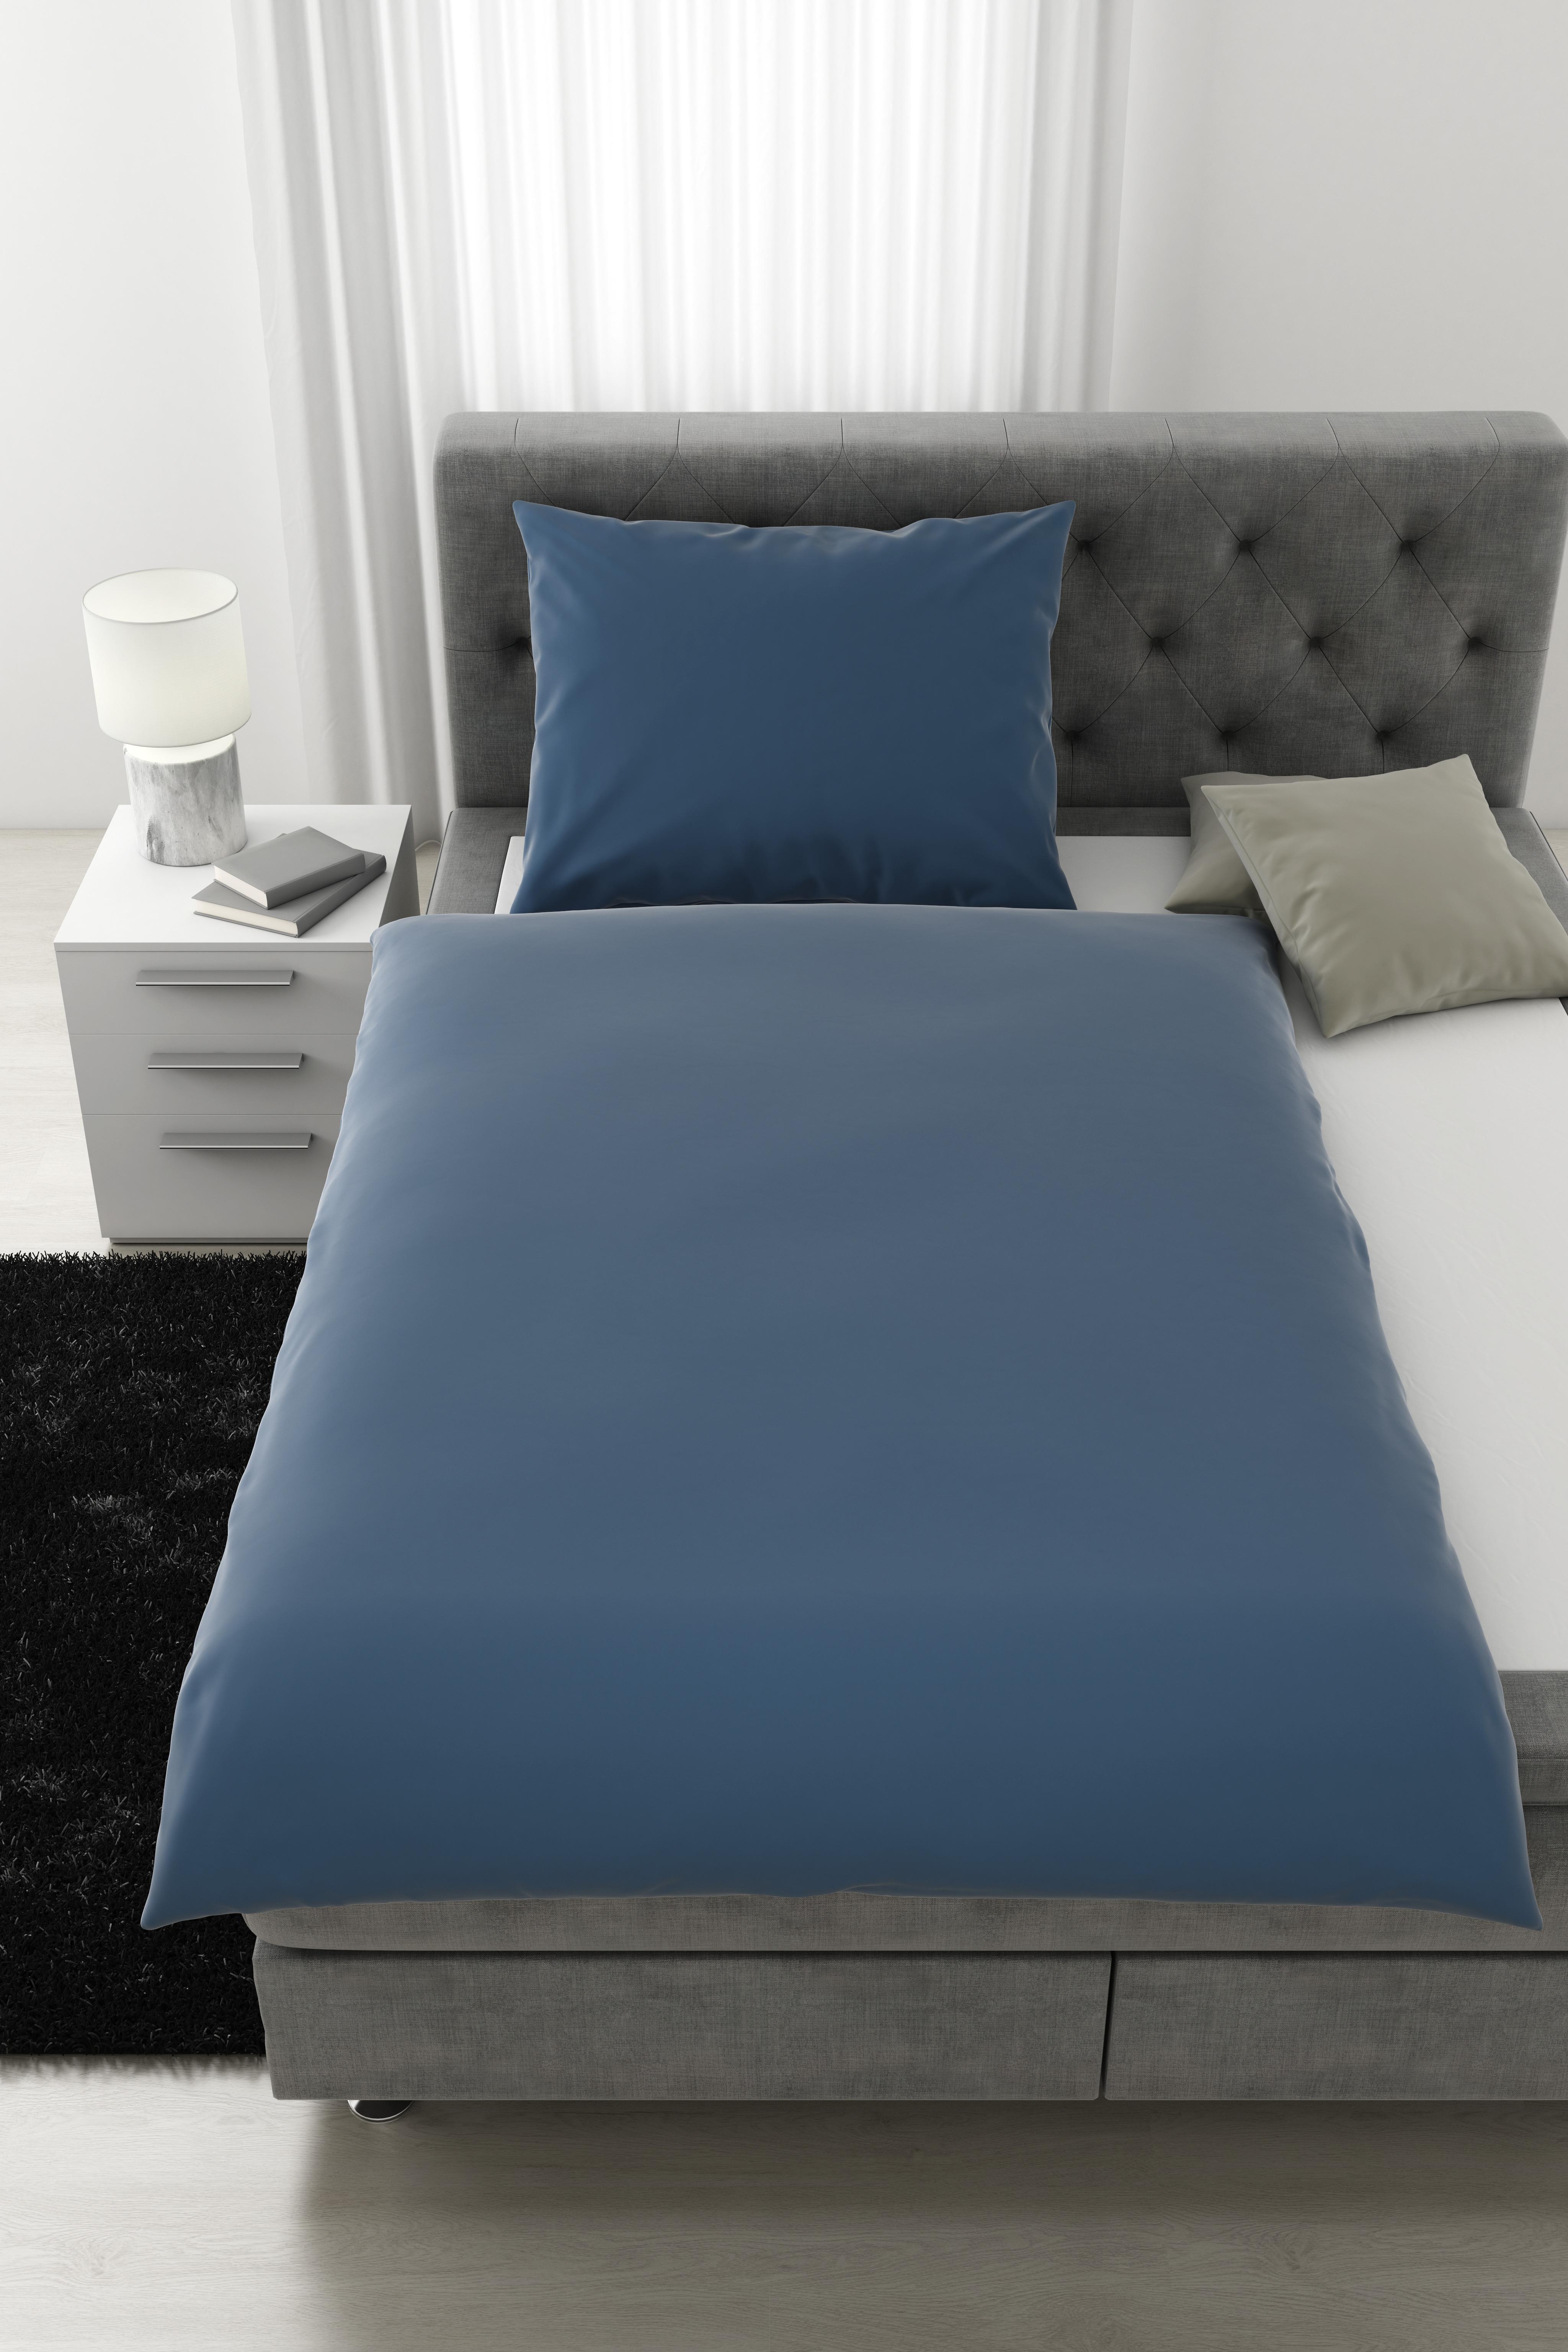 Lenjerie de pat Alex Uni - albastru, Modern, textil (140/200cm) - Premium Living